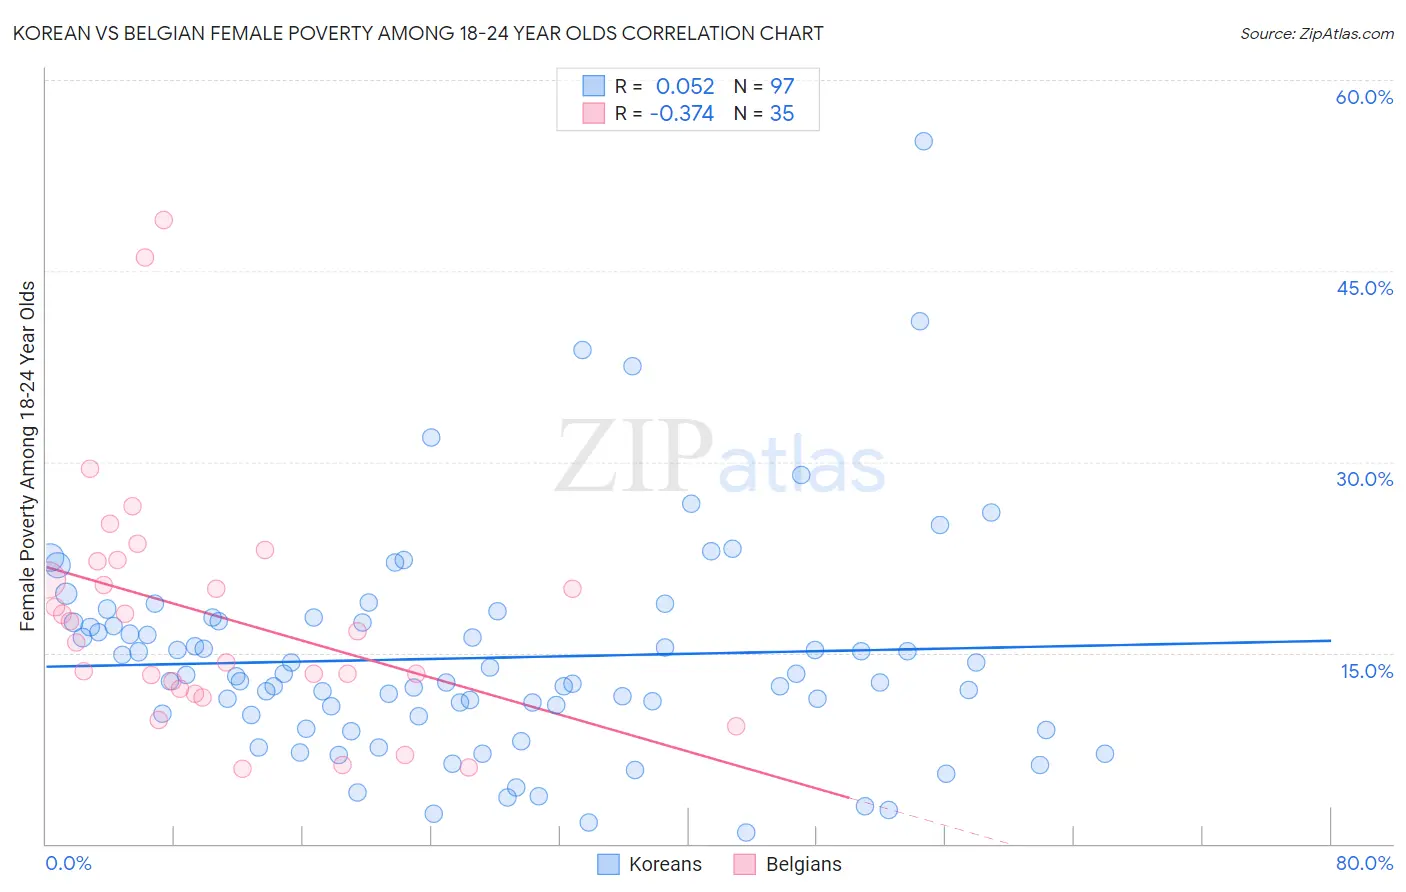 Korean vs Belgian Female Poverty Among 18-24 Year Olds